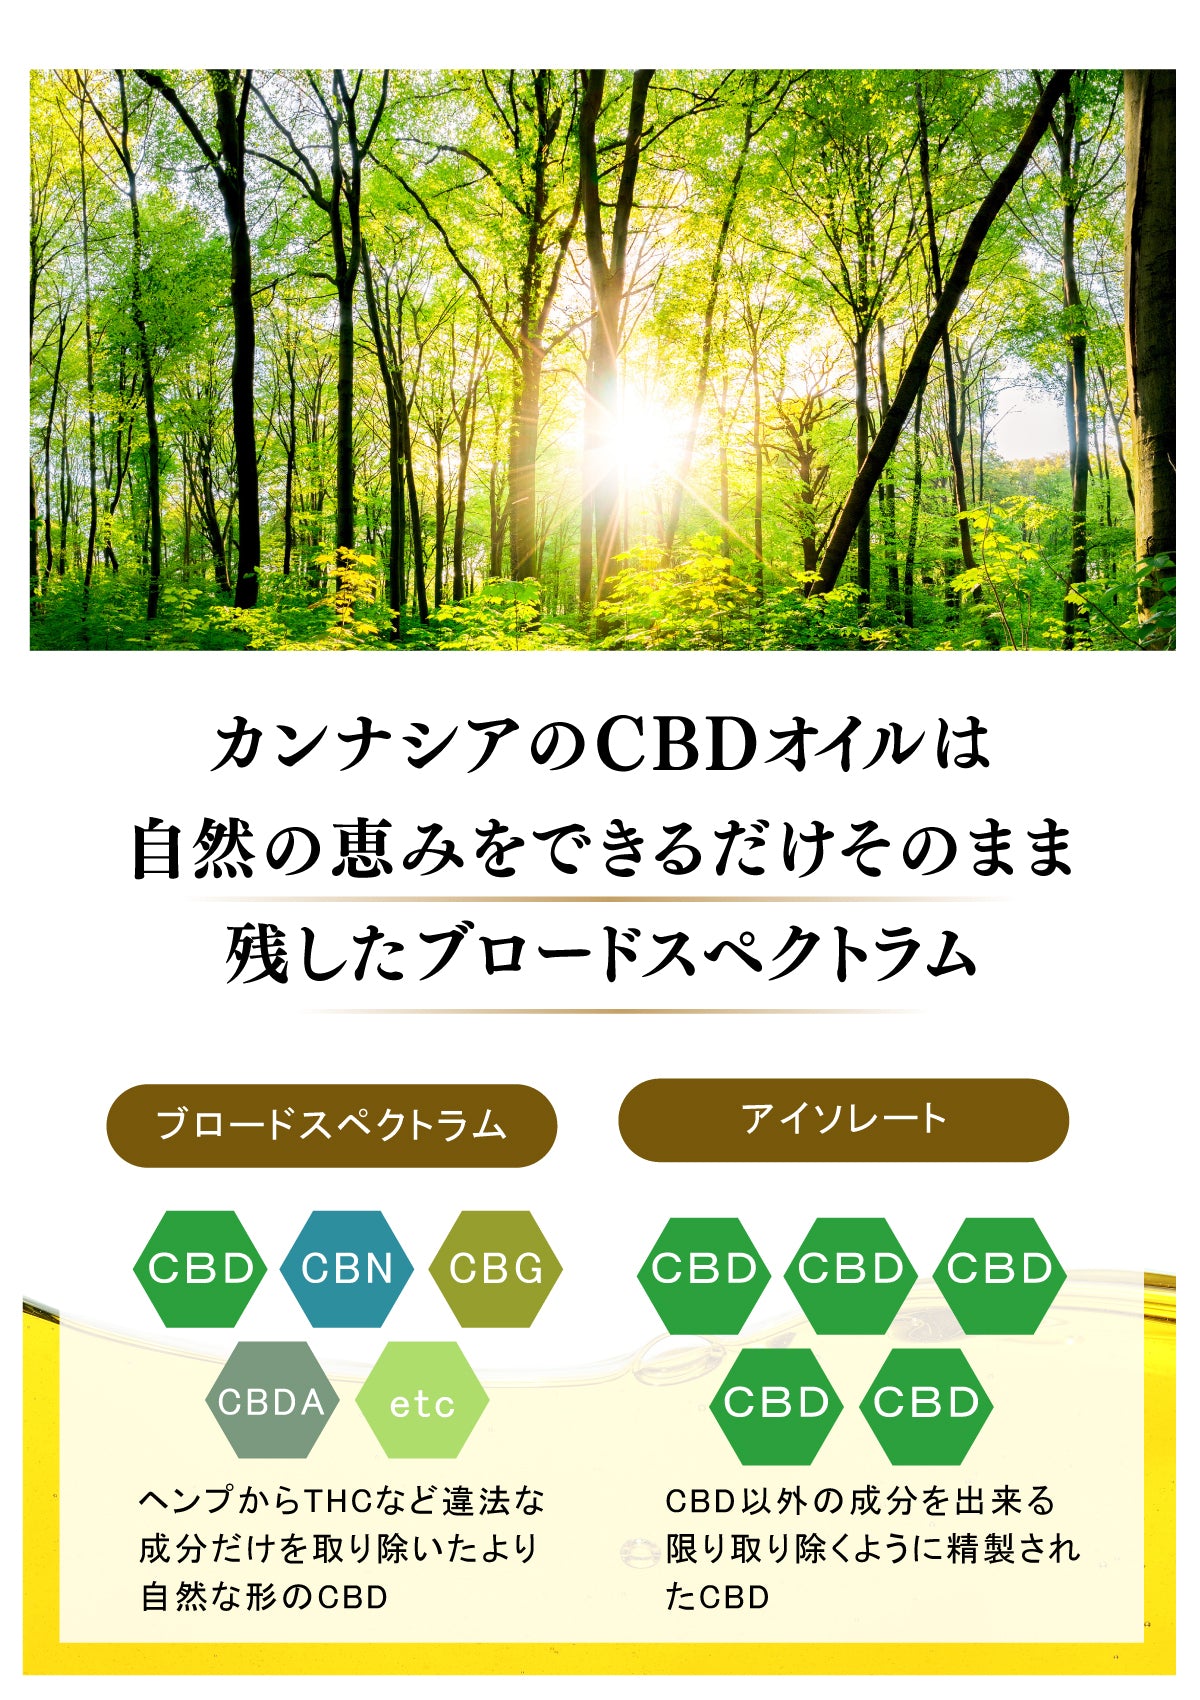 CANNAXIA カンナシア CBDオイル ブロードスペクトラム 高濃度CBD55% 5500mg配合 容量 10ml 日本製